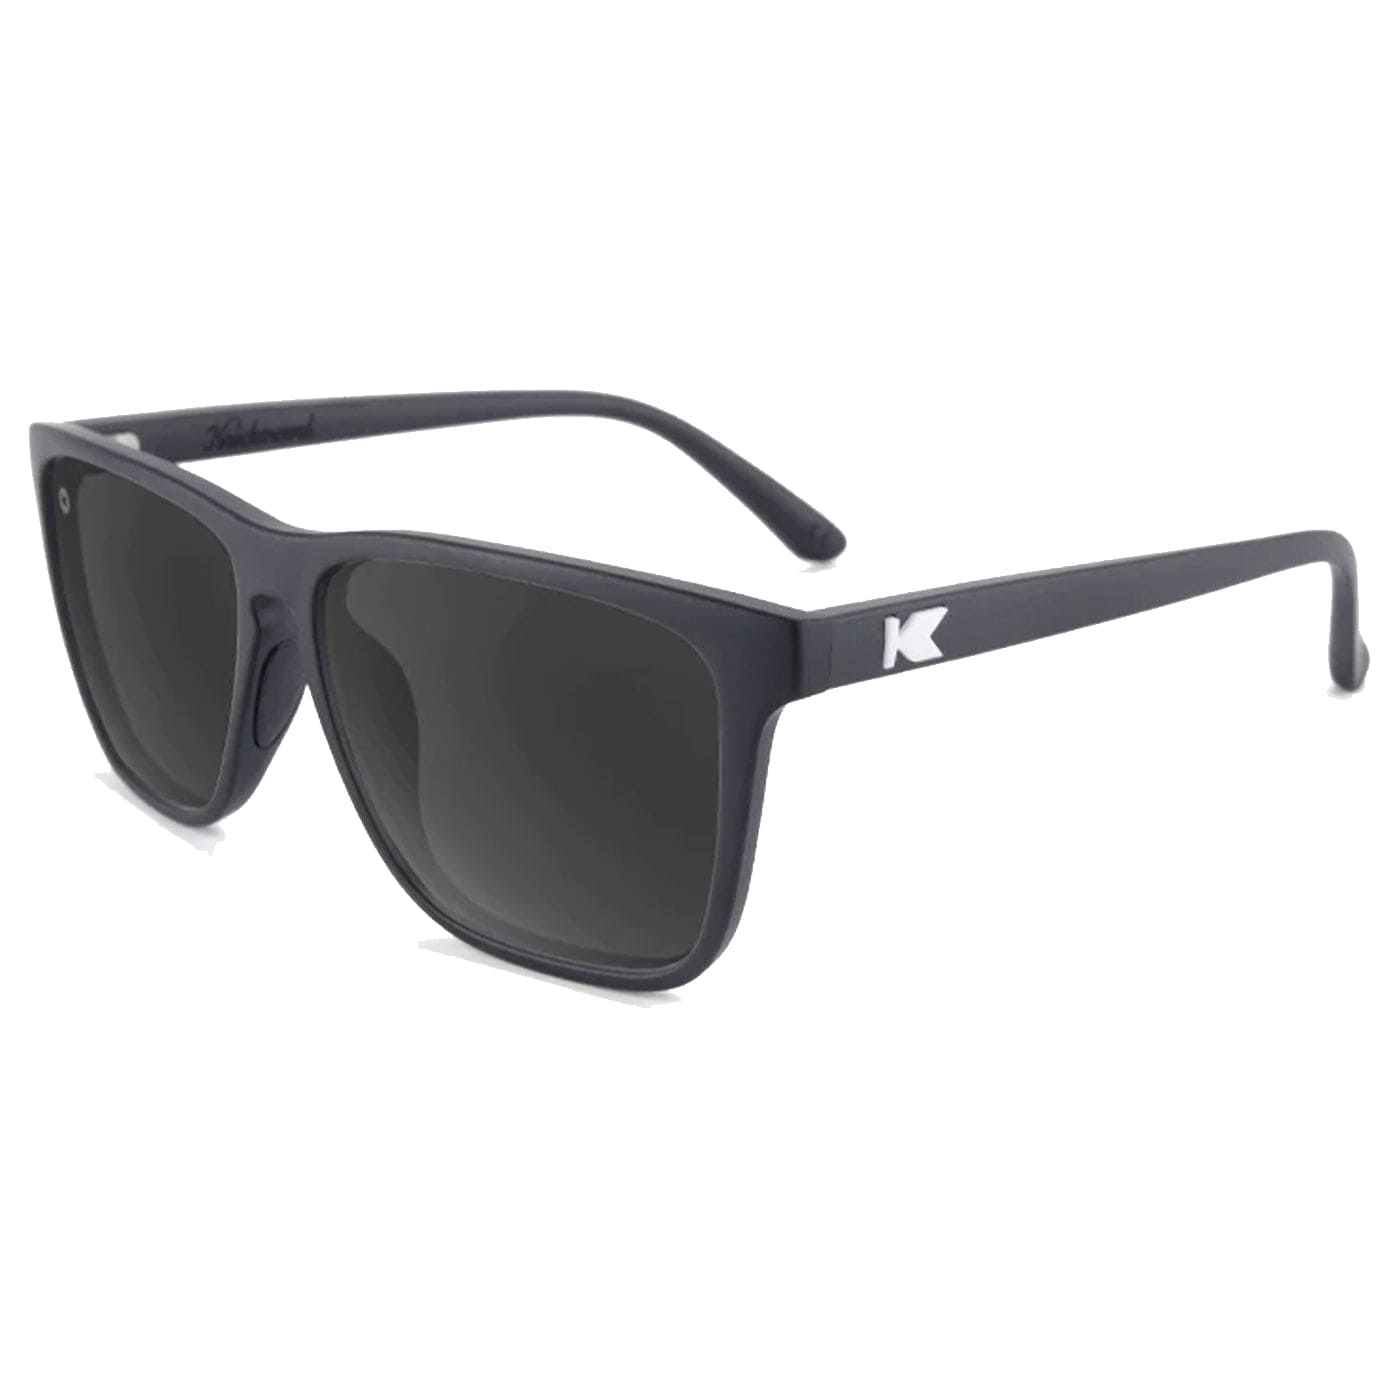 Knockaround Sunglasses Black / Smoke Fast Lanes Sport XMiles